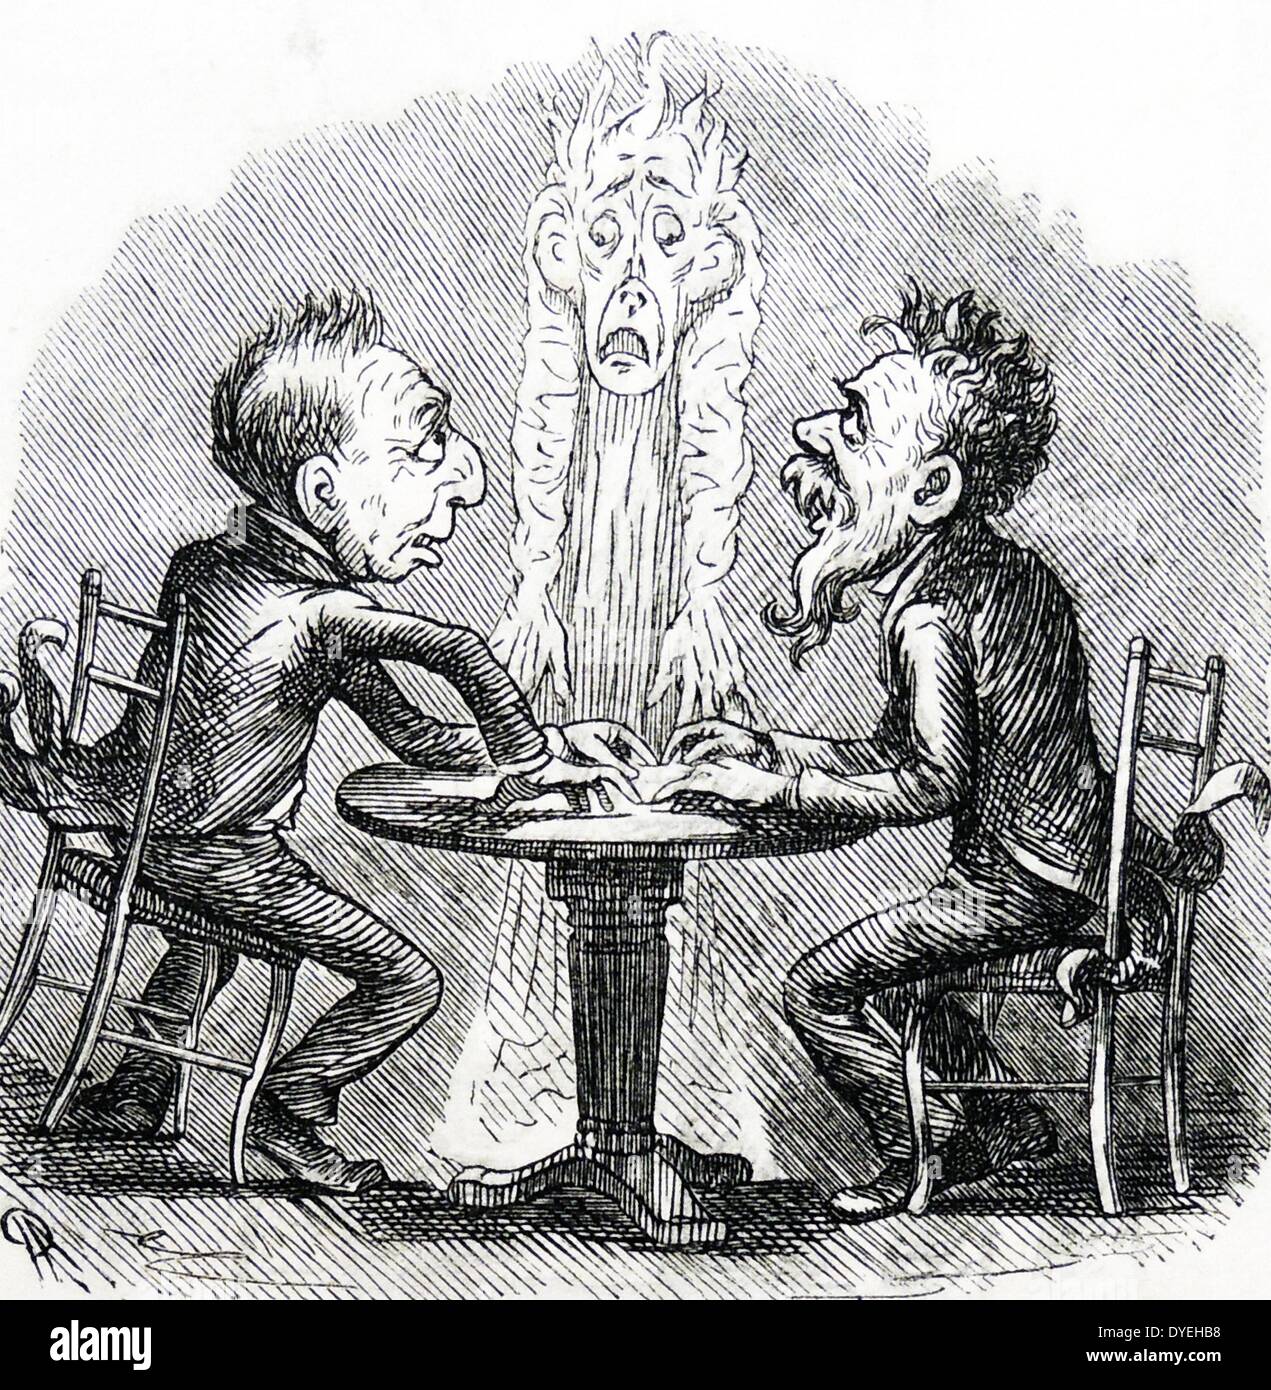 Cartoon soutenant la condamnation de moyen 'Dr' Monck pour elles dupent personnes crédules avec son faux spiritualisme. Dans ''punch'', Londres, 1877. Banque D'Images